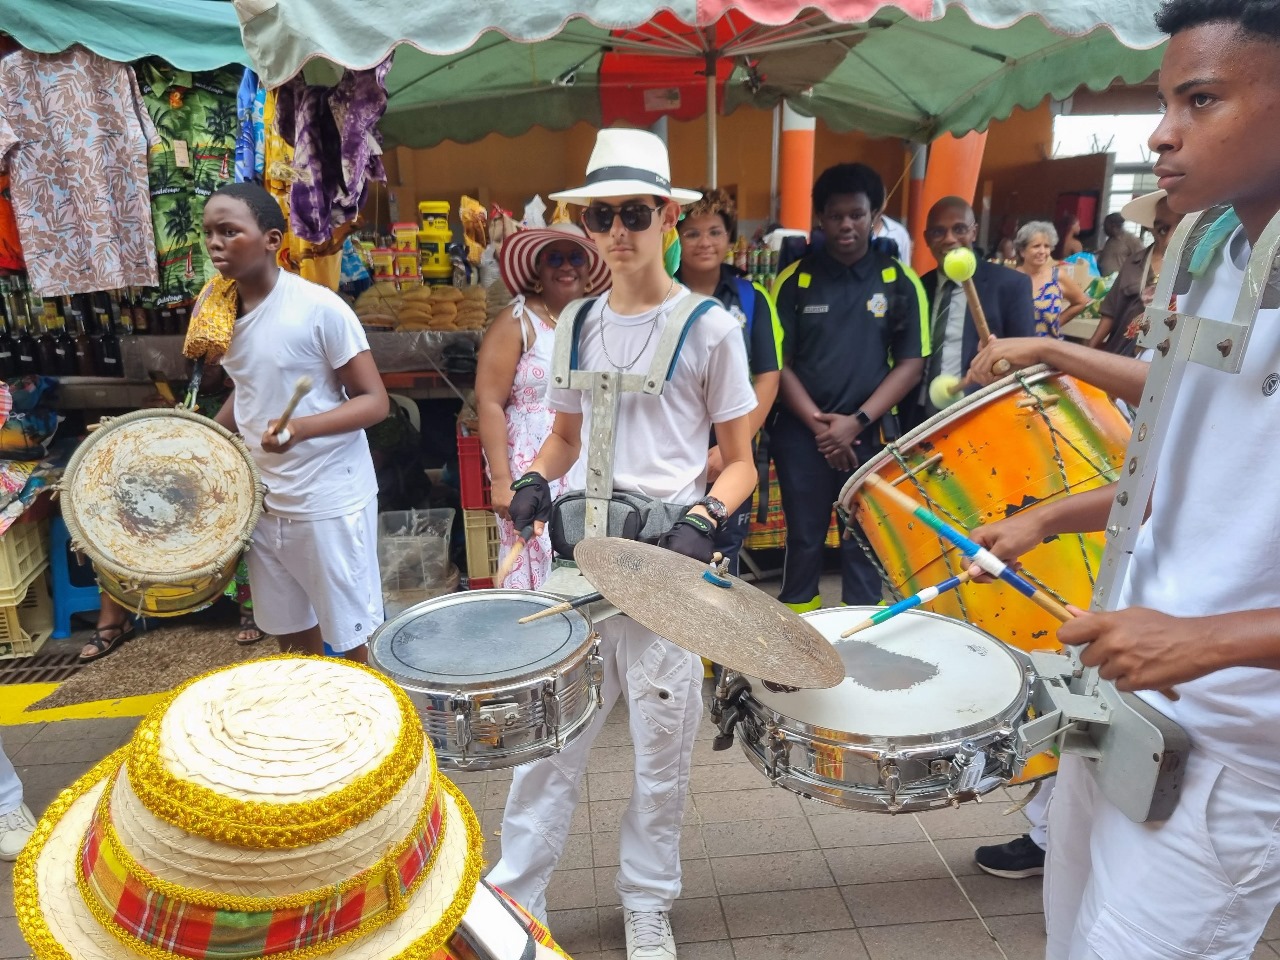 Carnaval : les marchandes entrent dans la danse à Basse-Terre